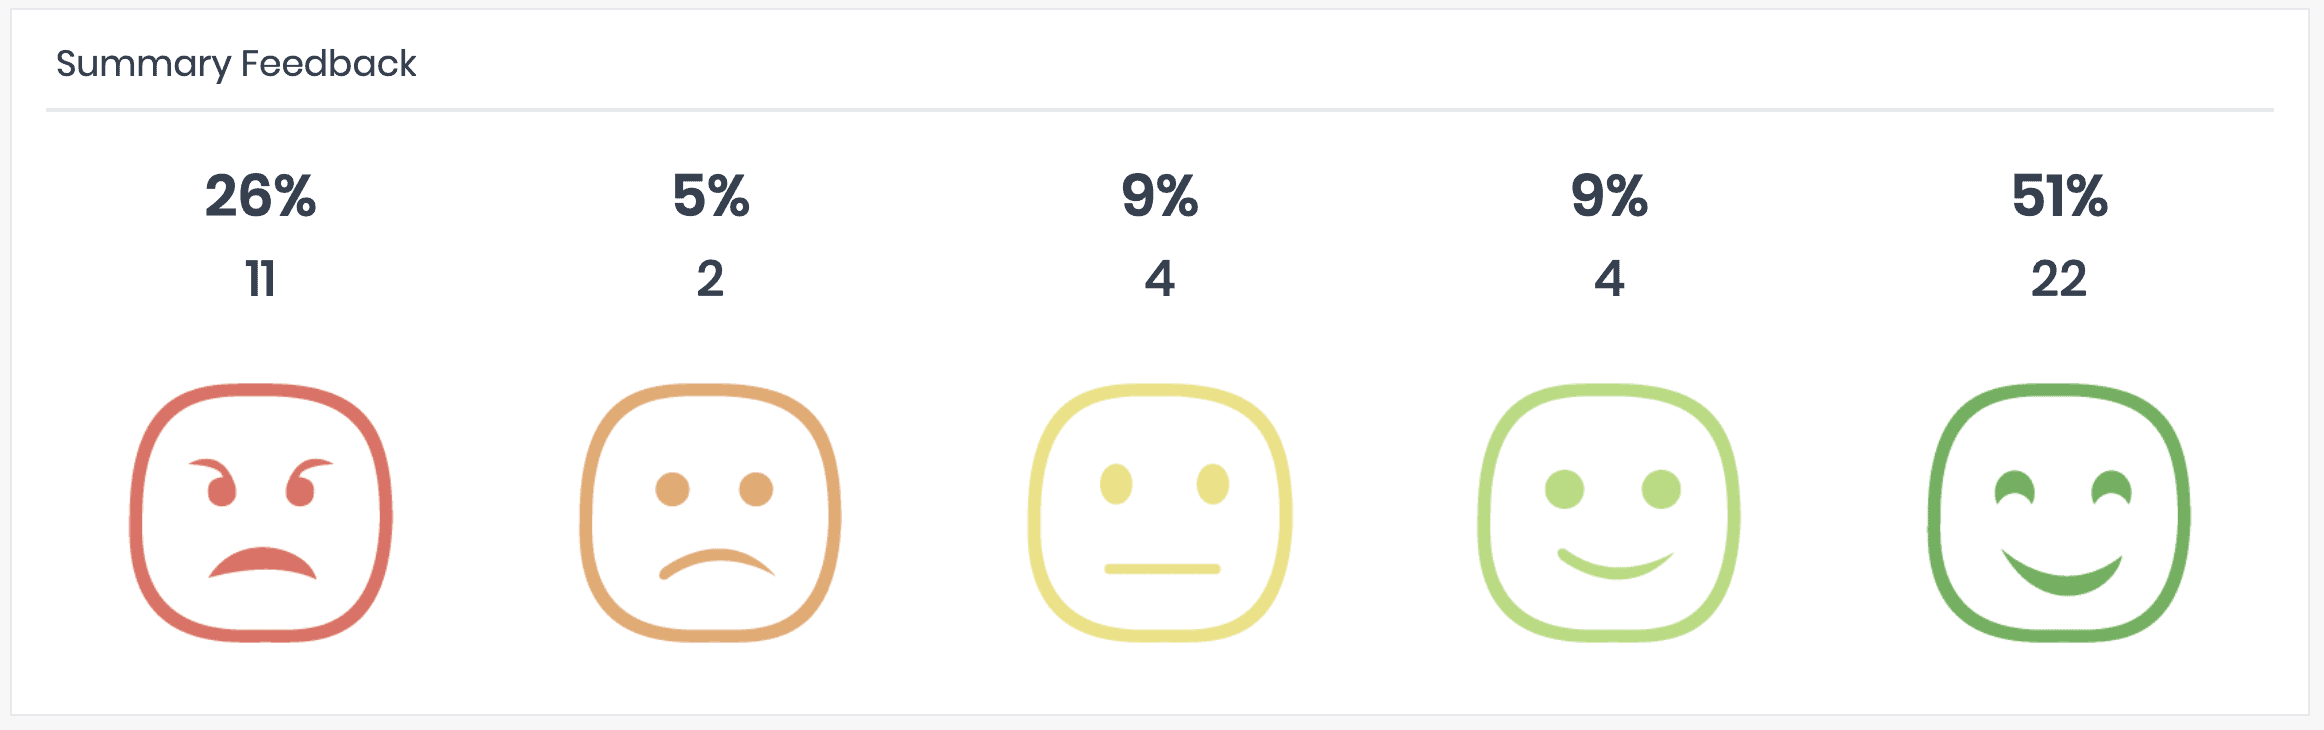 Emoji Survey Feedback